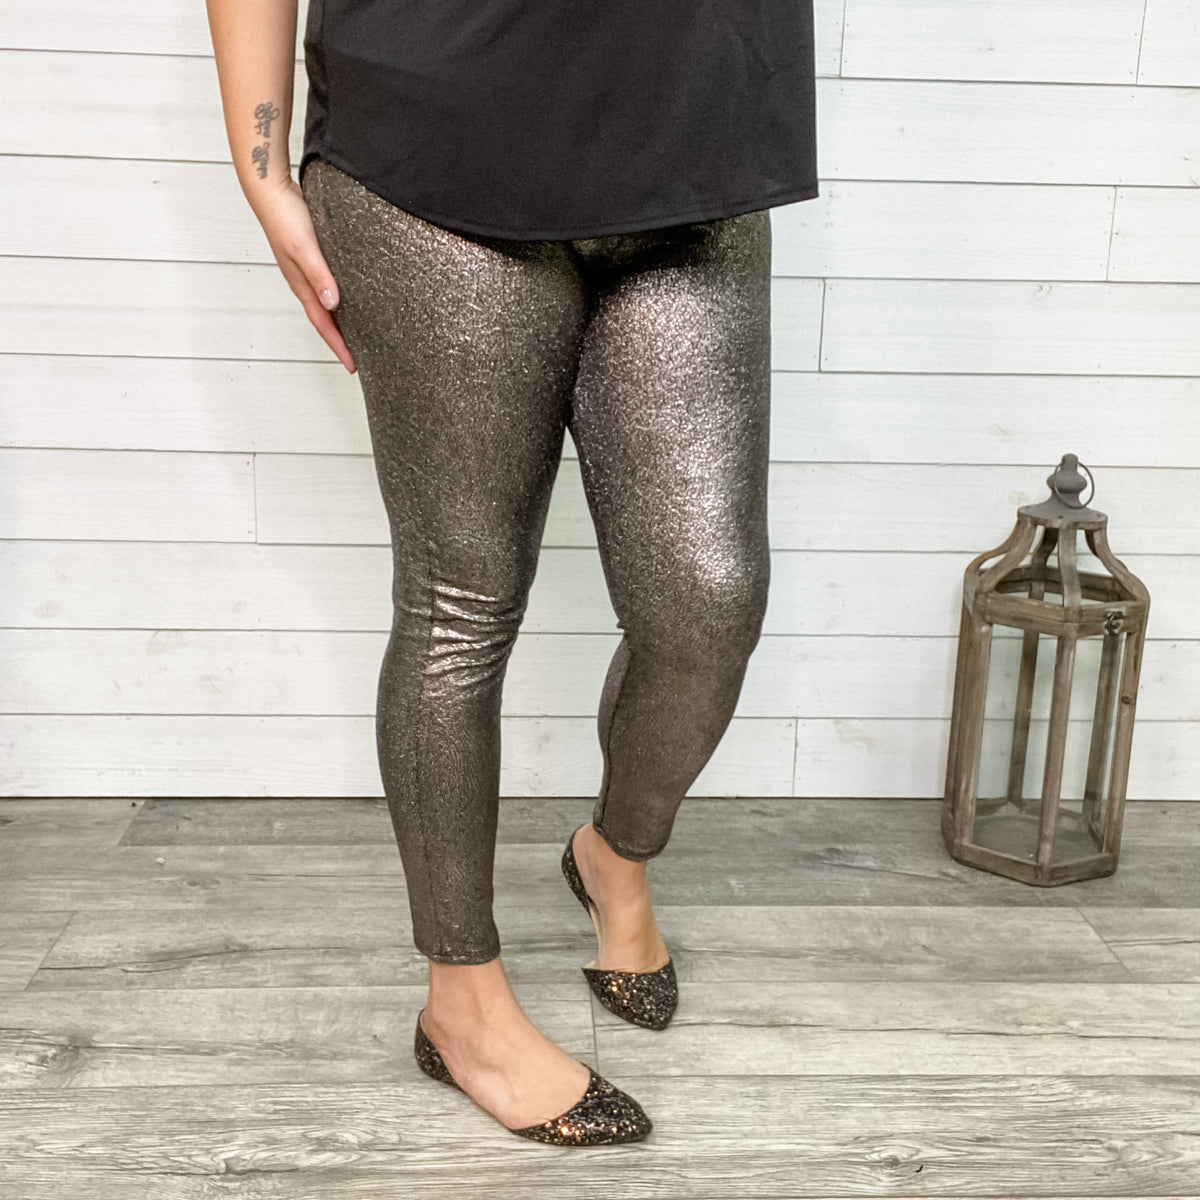 Black Sparkle Cotton Leggings - Ladies Fashion Wear & More Love4Bags  Boutique